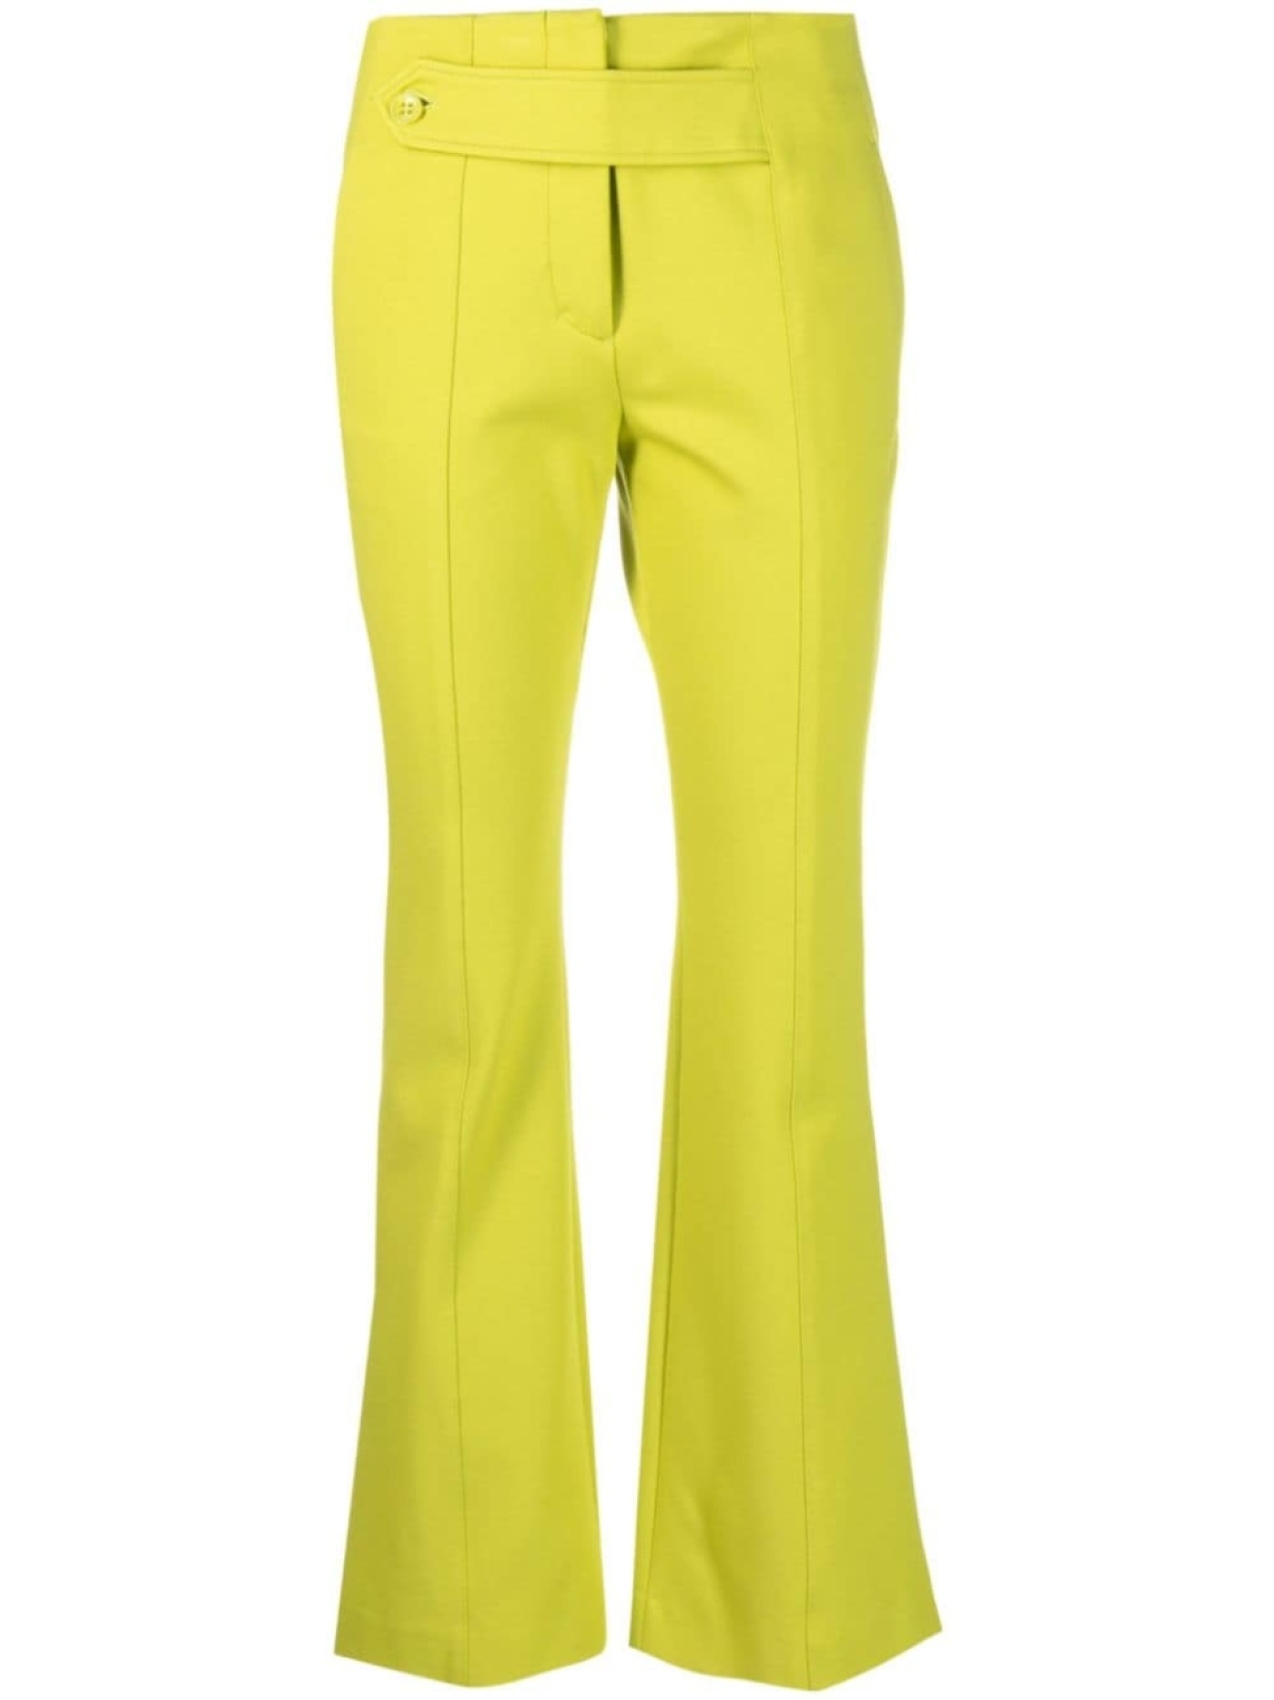 Расклешенные брюки со вставкой на пуговице Dorothee Schumacher, зеленый